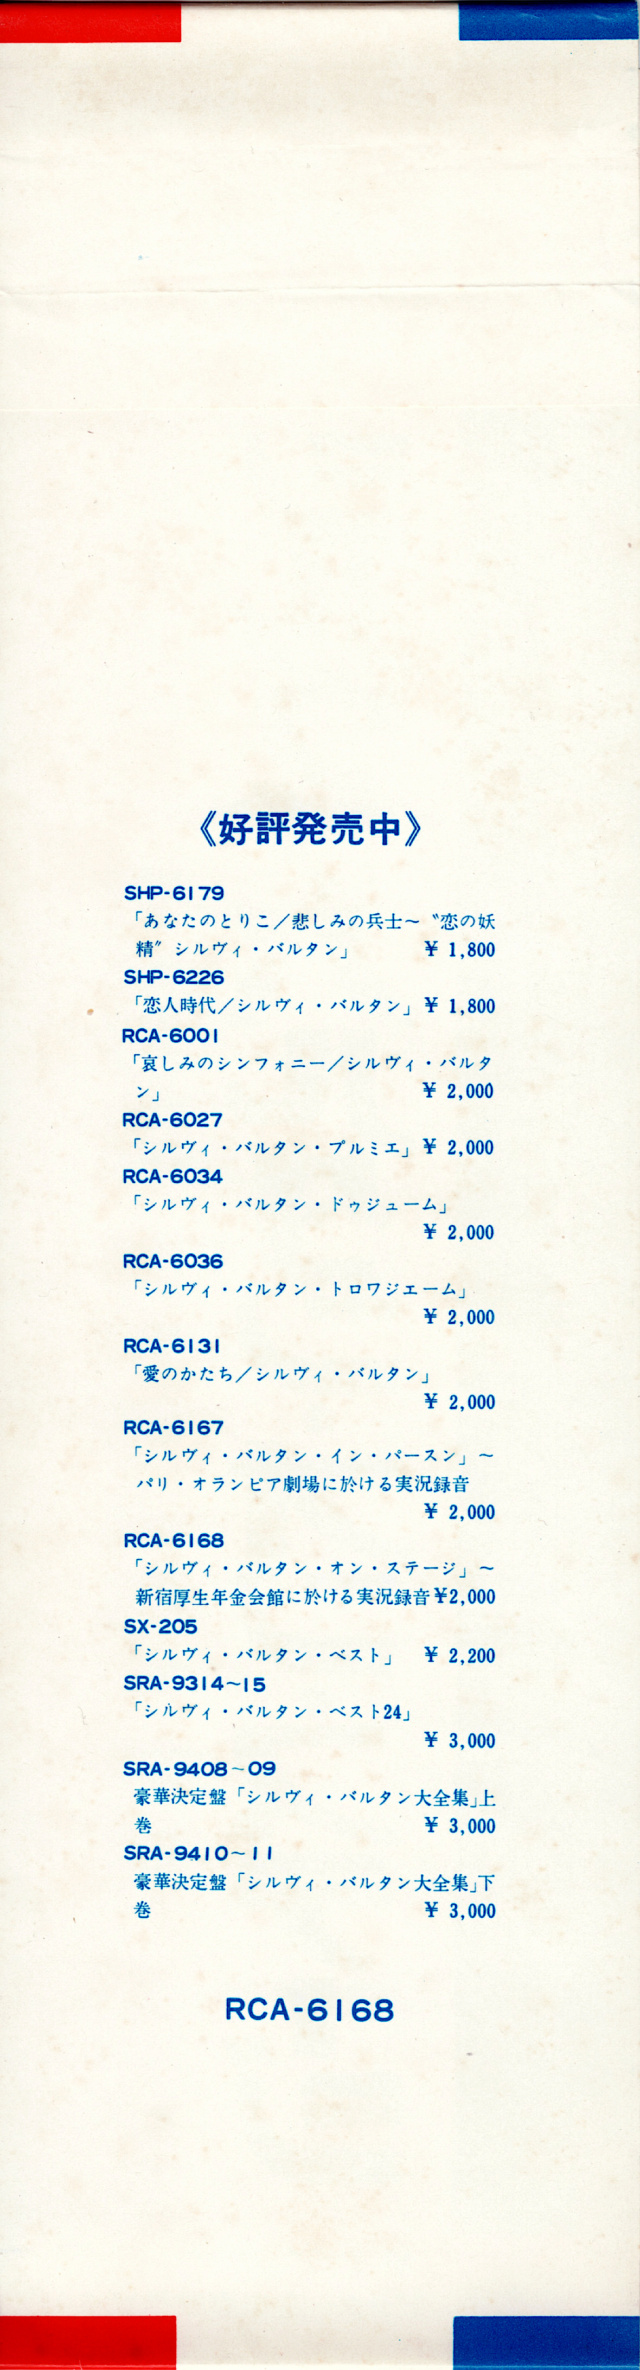 Discographie Japonaise - 3ème partie -  (33 T ORIGINAUX)  - Page 17 Jpn_2441